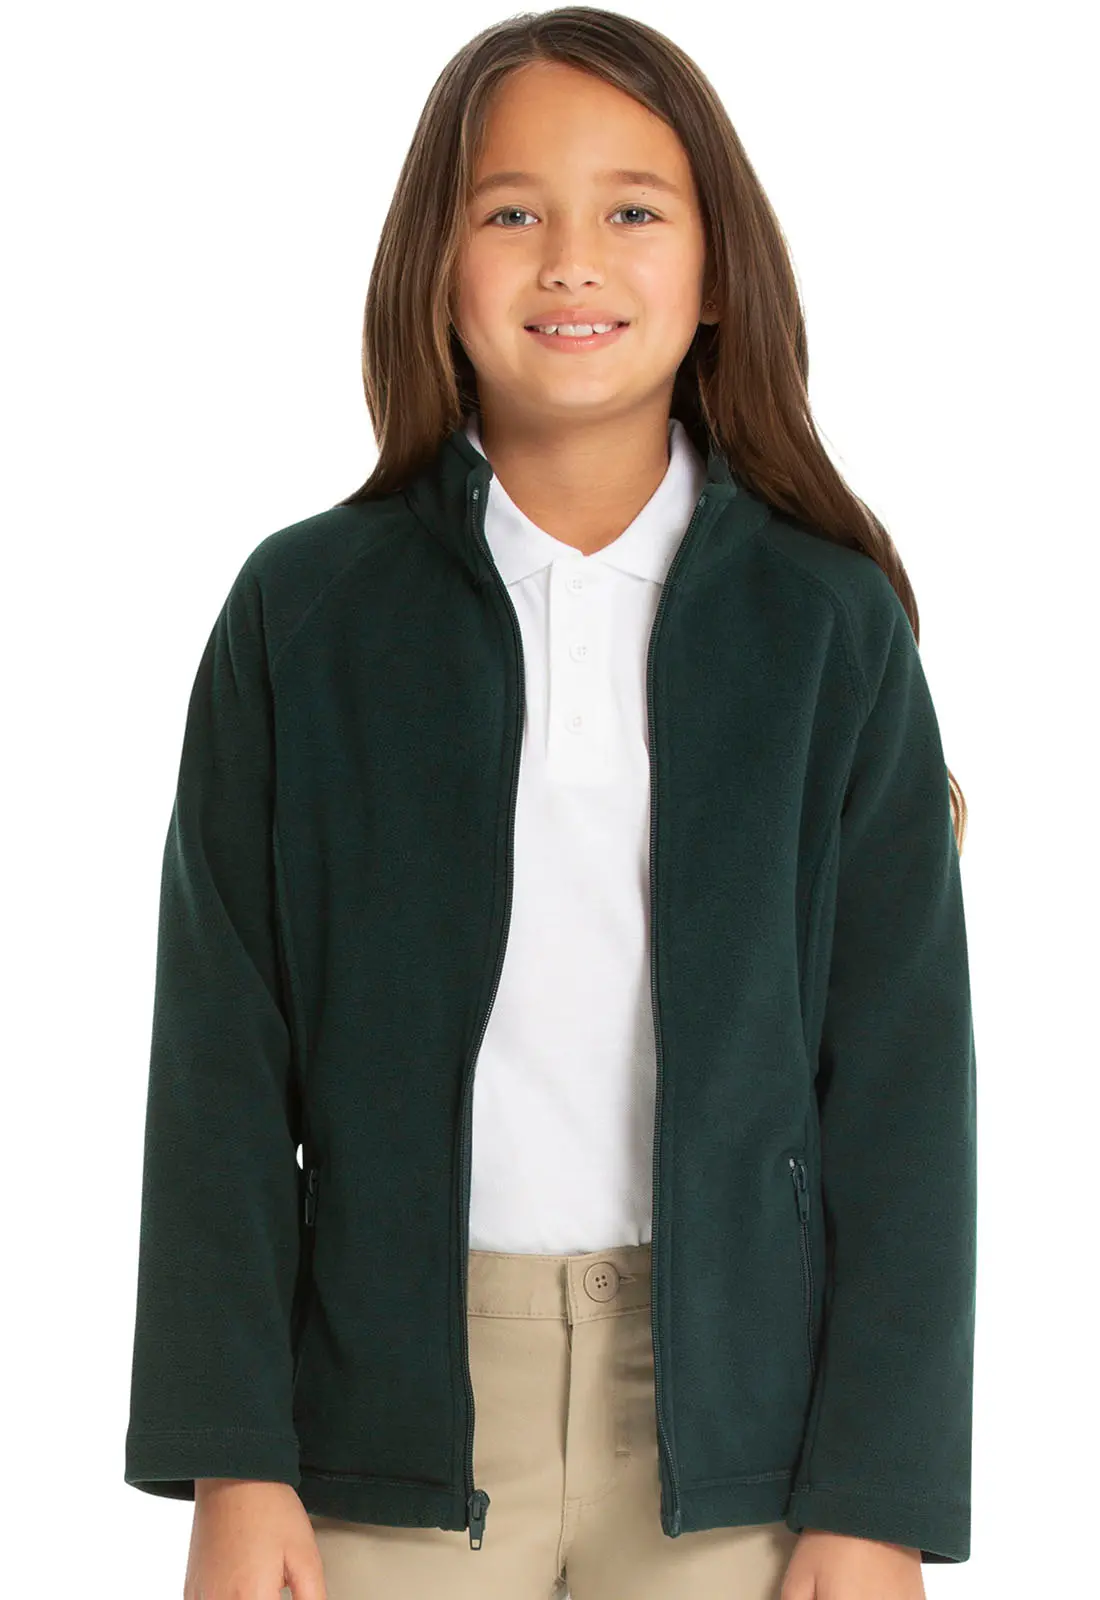 Girls Fitted Polar Fleece Jacket-Classroom Uniforms